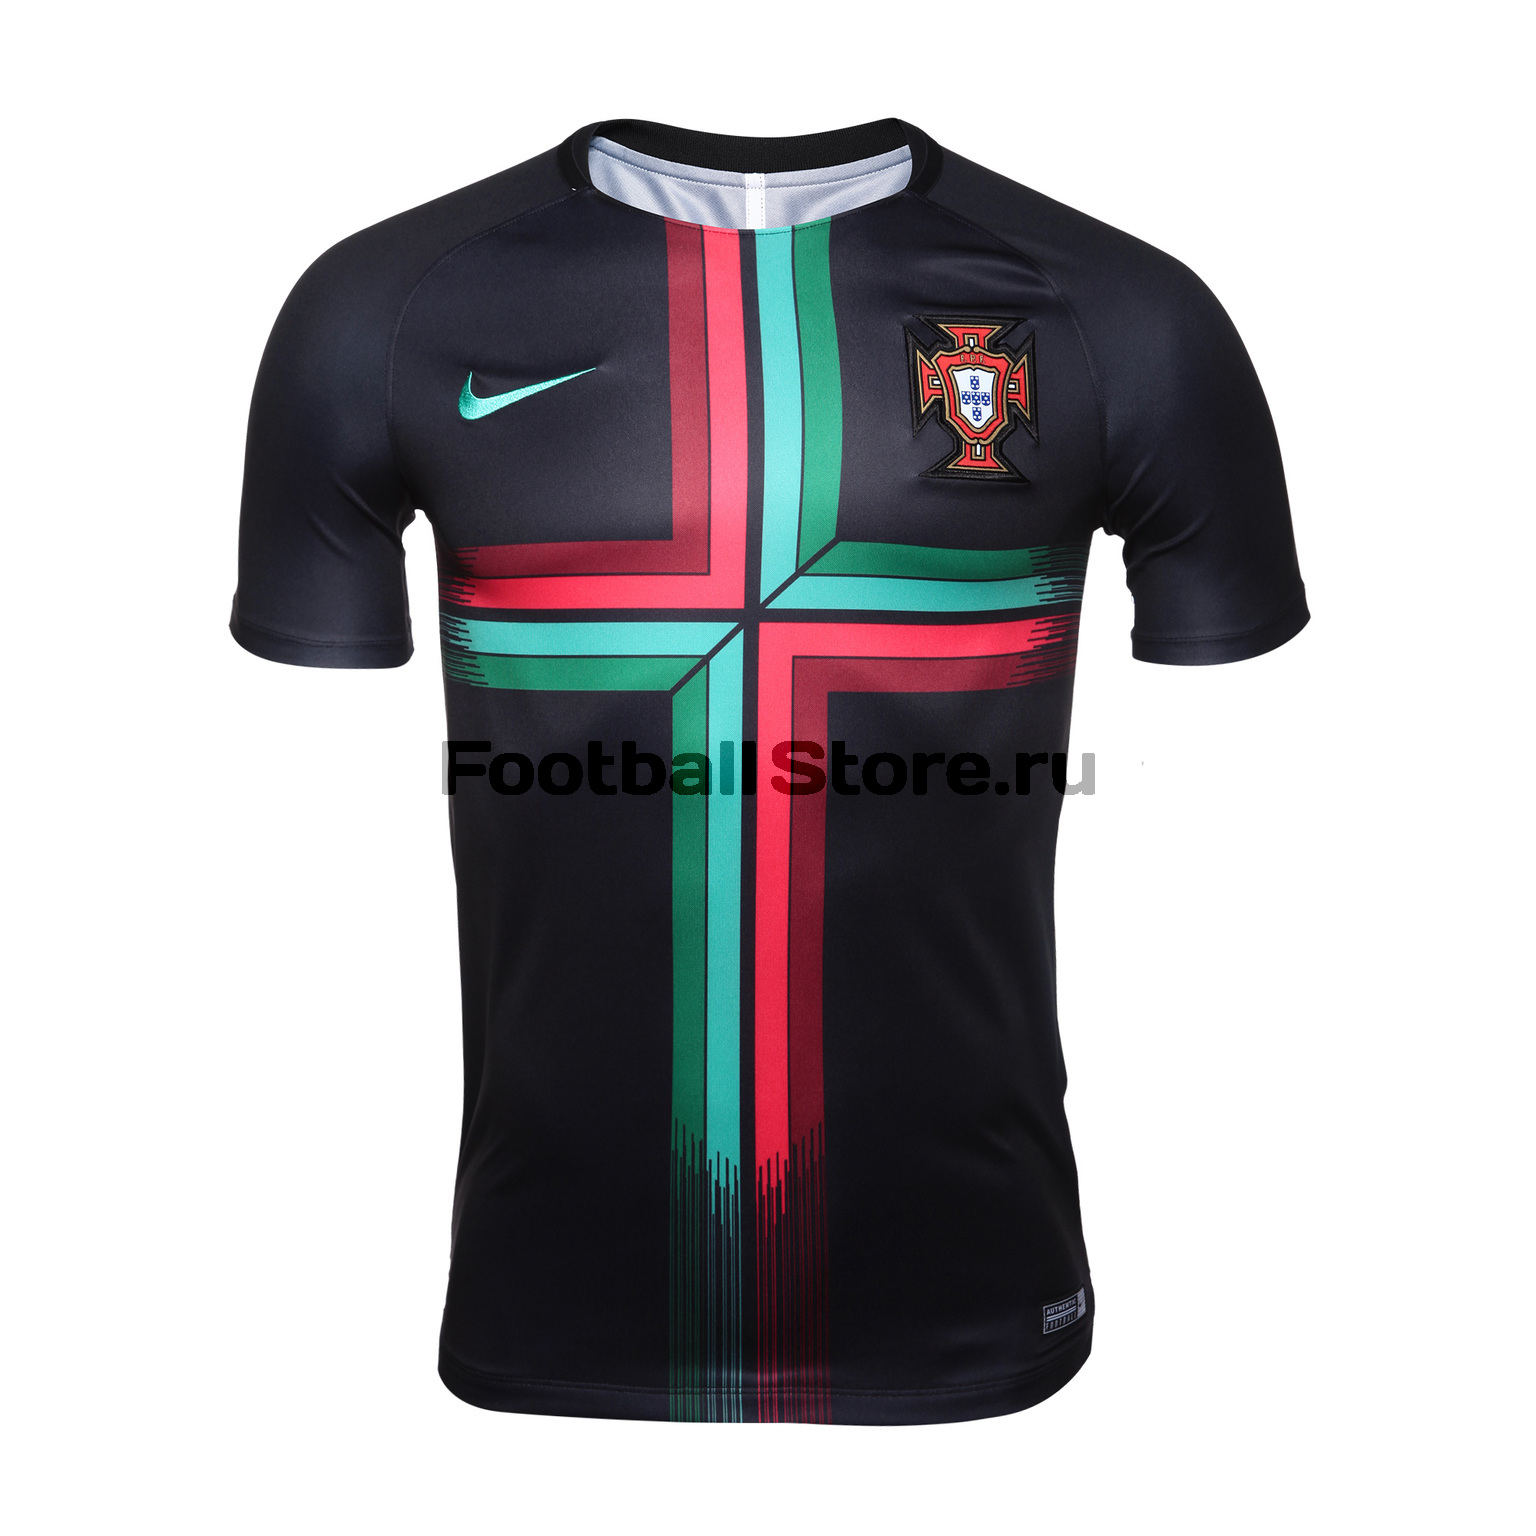 Футболка тренировочная Nike сборной Португалии 893360-010 